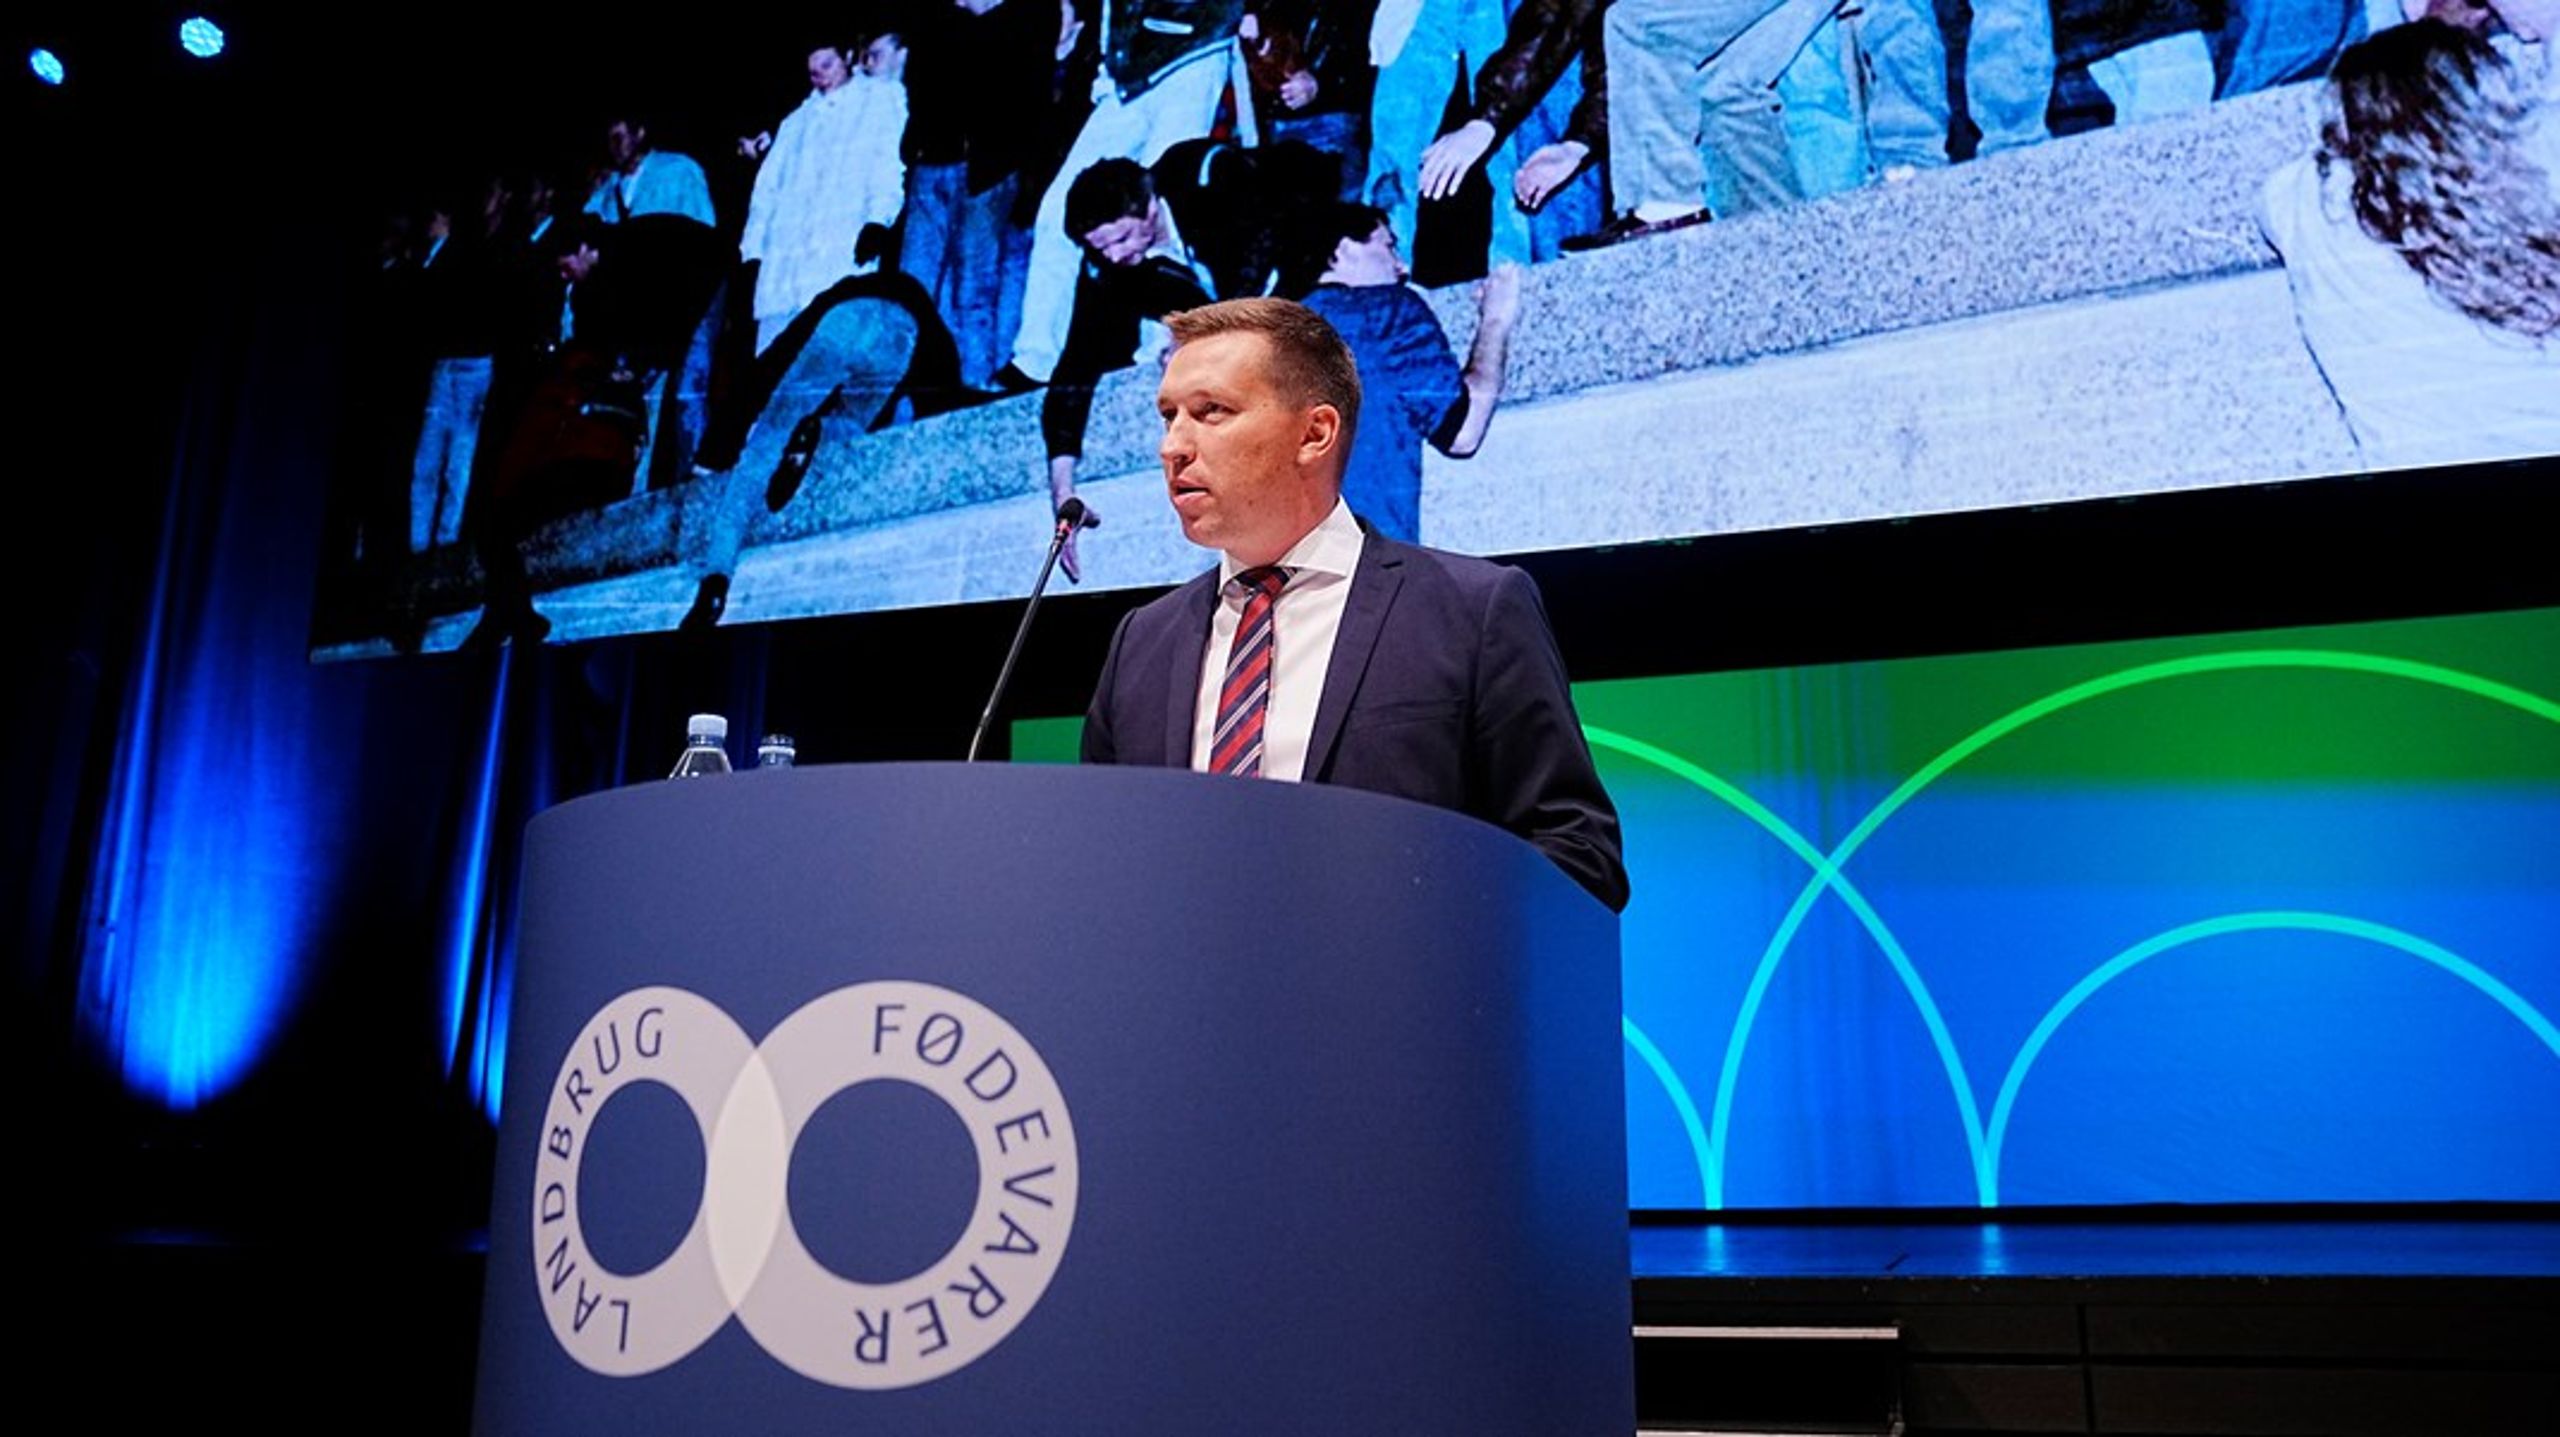 Landbrug &amp; Fødevarer, med formand Søren Søndergaard i front, var for nyligt værter for en konference, hvor de fremlagde fire prioriteter for den næste europæiske landbrugspolitik.